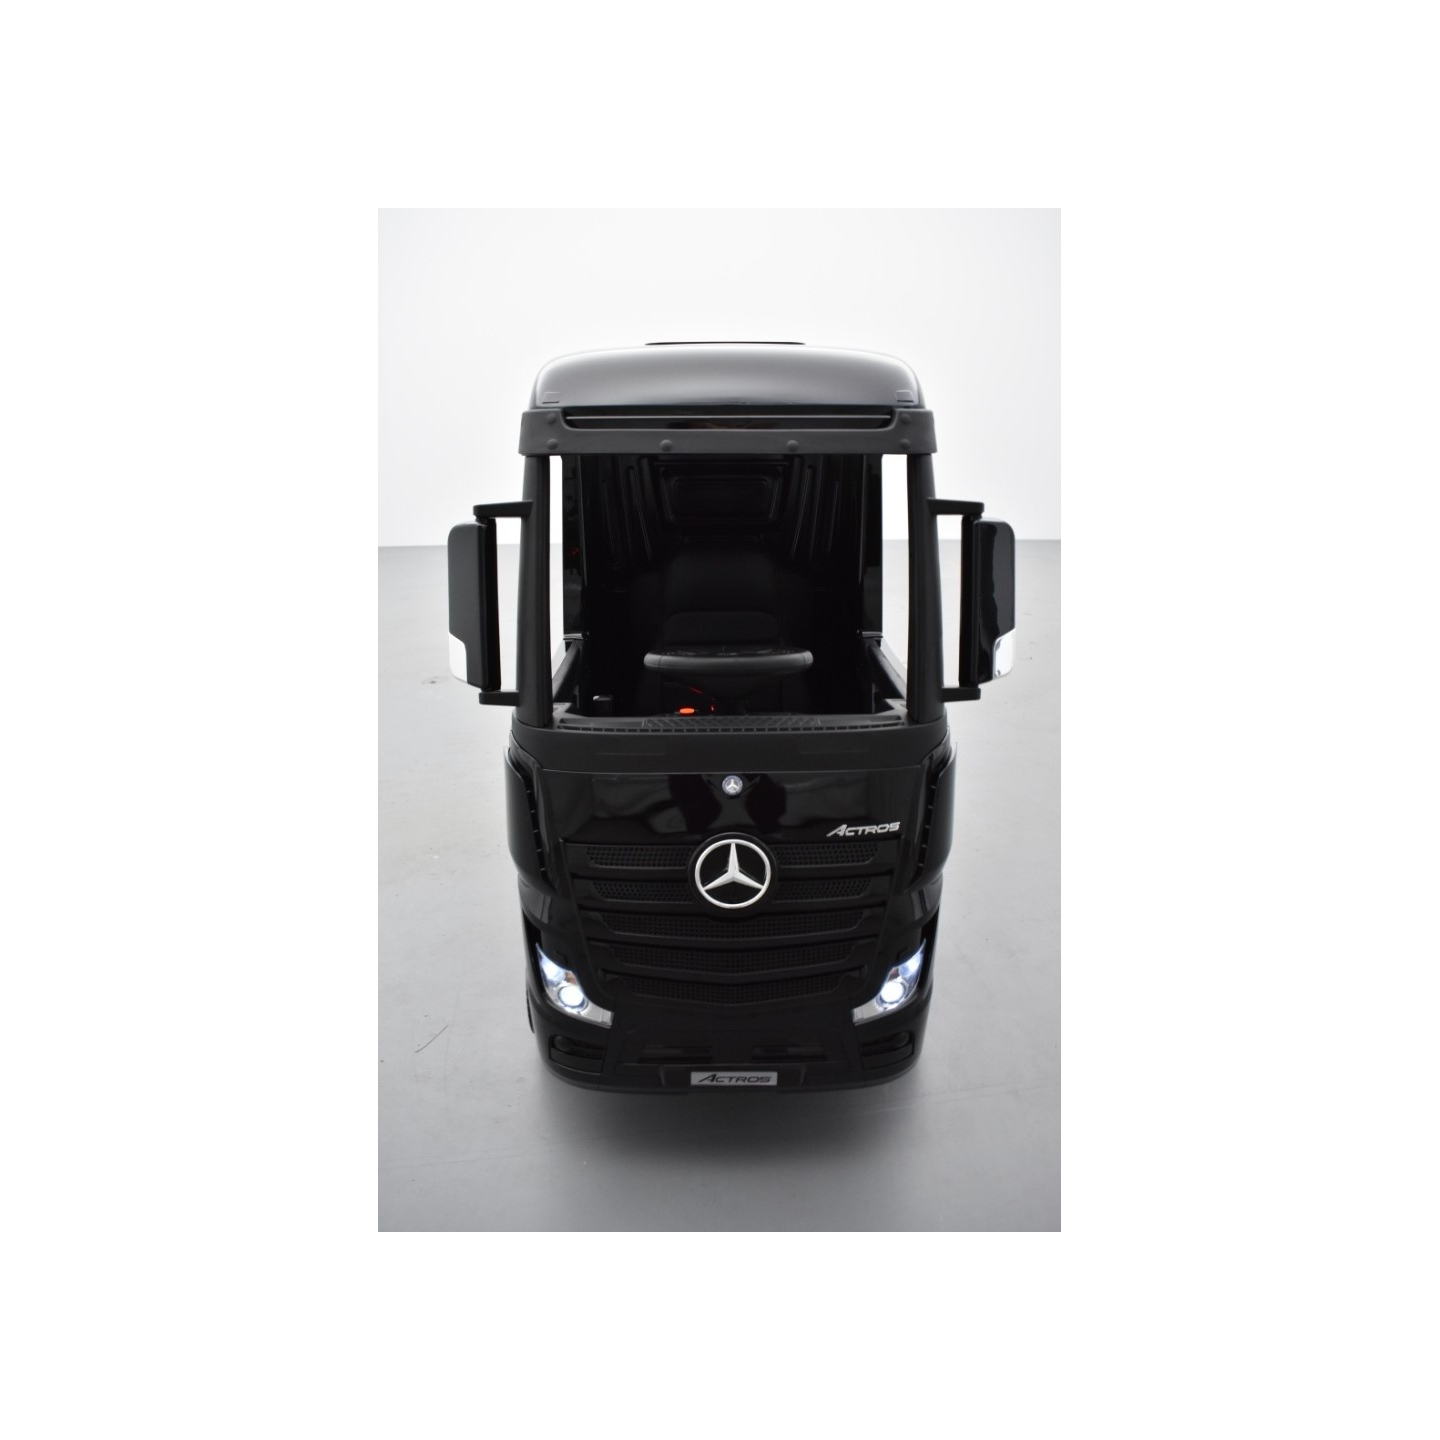 Mercedes Actros noir métallisé 2 x 12V, camion électrique enfant 12 volts télécommande parentale 2.4 Ghz, 12V 14Ah, 4 moteurs